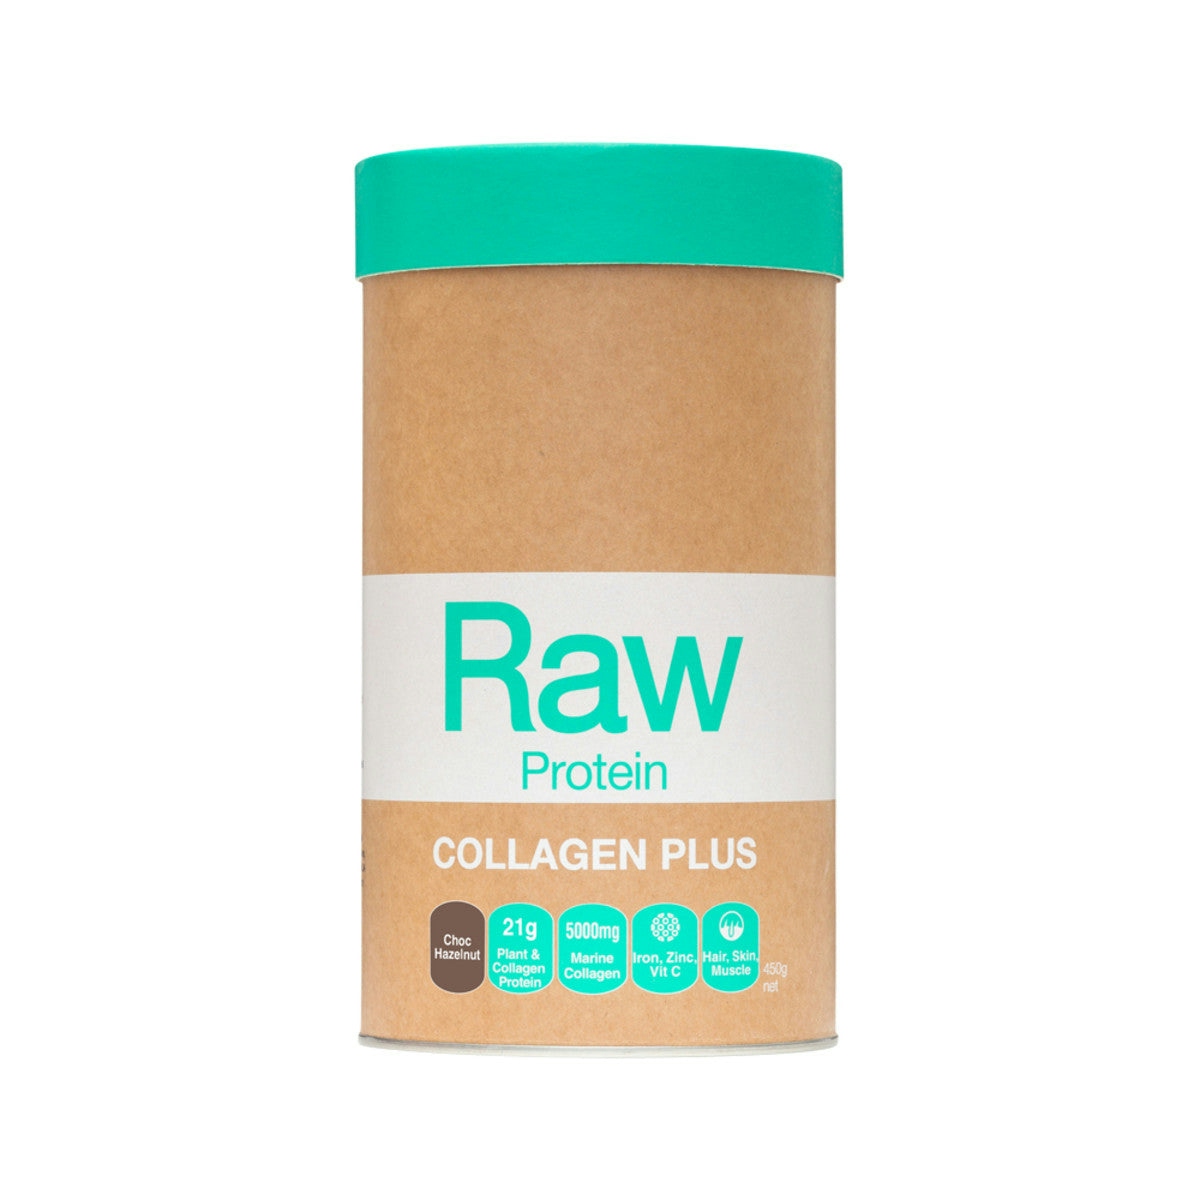 image of Amazonia Raw Protein Collagen Plus Choc Hazelnut 450g on white background